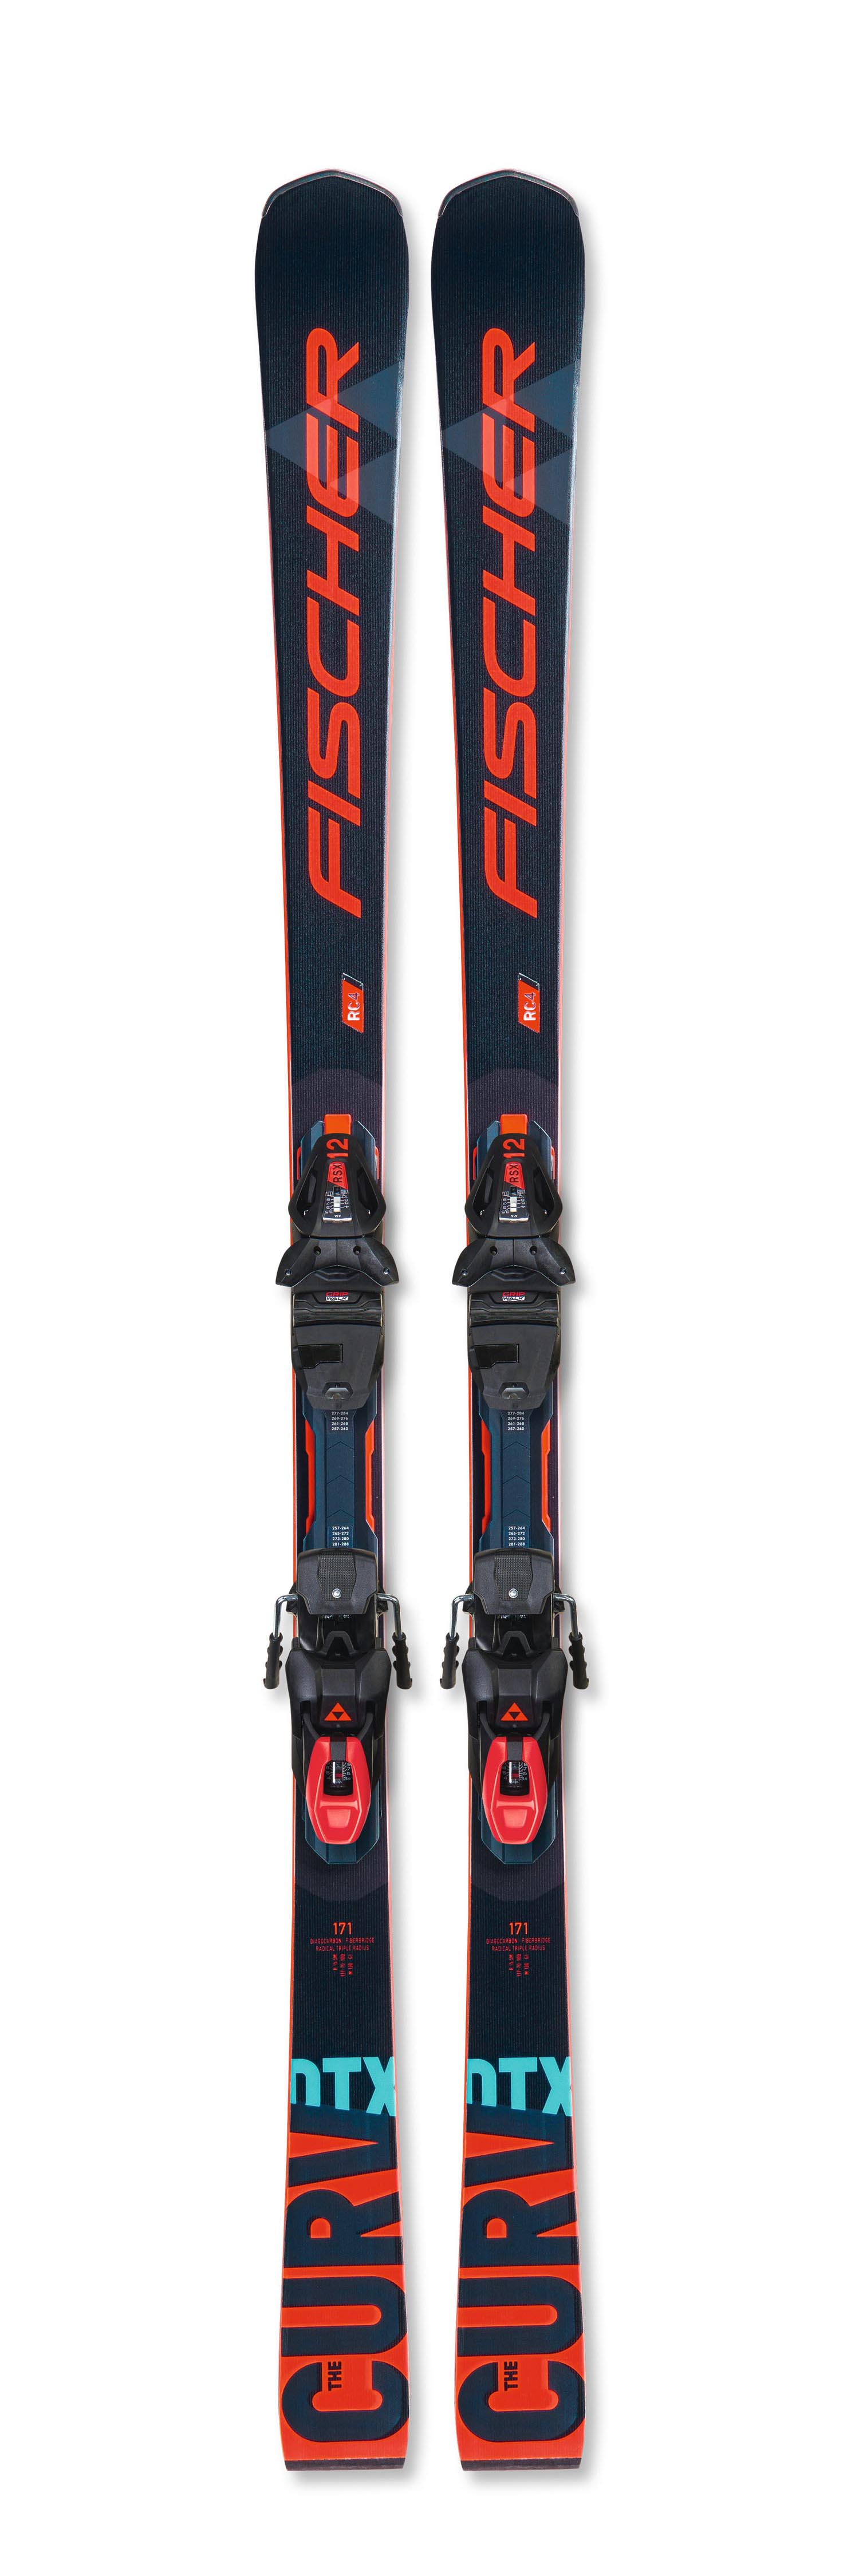 ◇ スキー FISCHER PROGRESSOR 165 cm カービングスキー - スキー